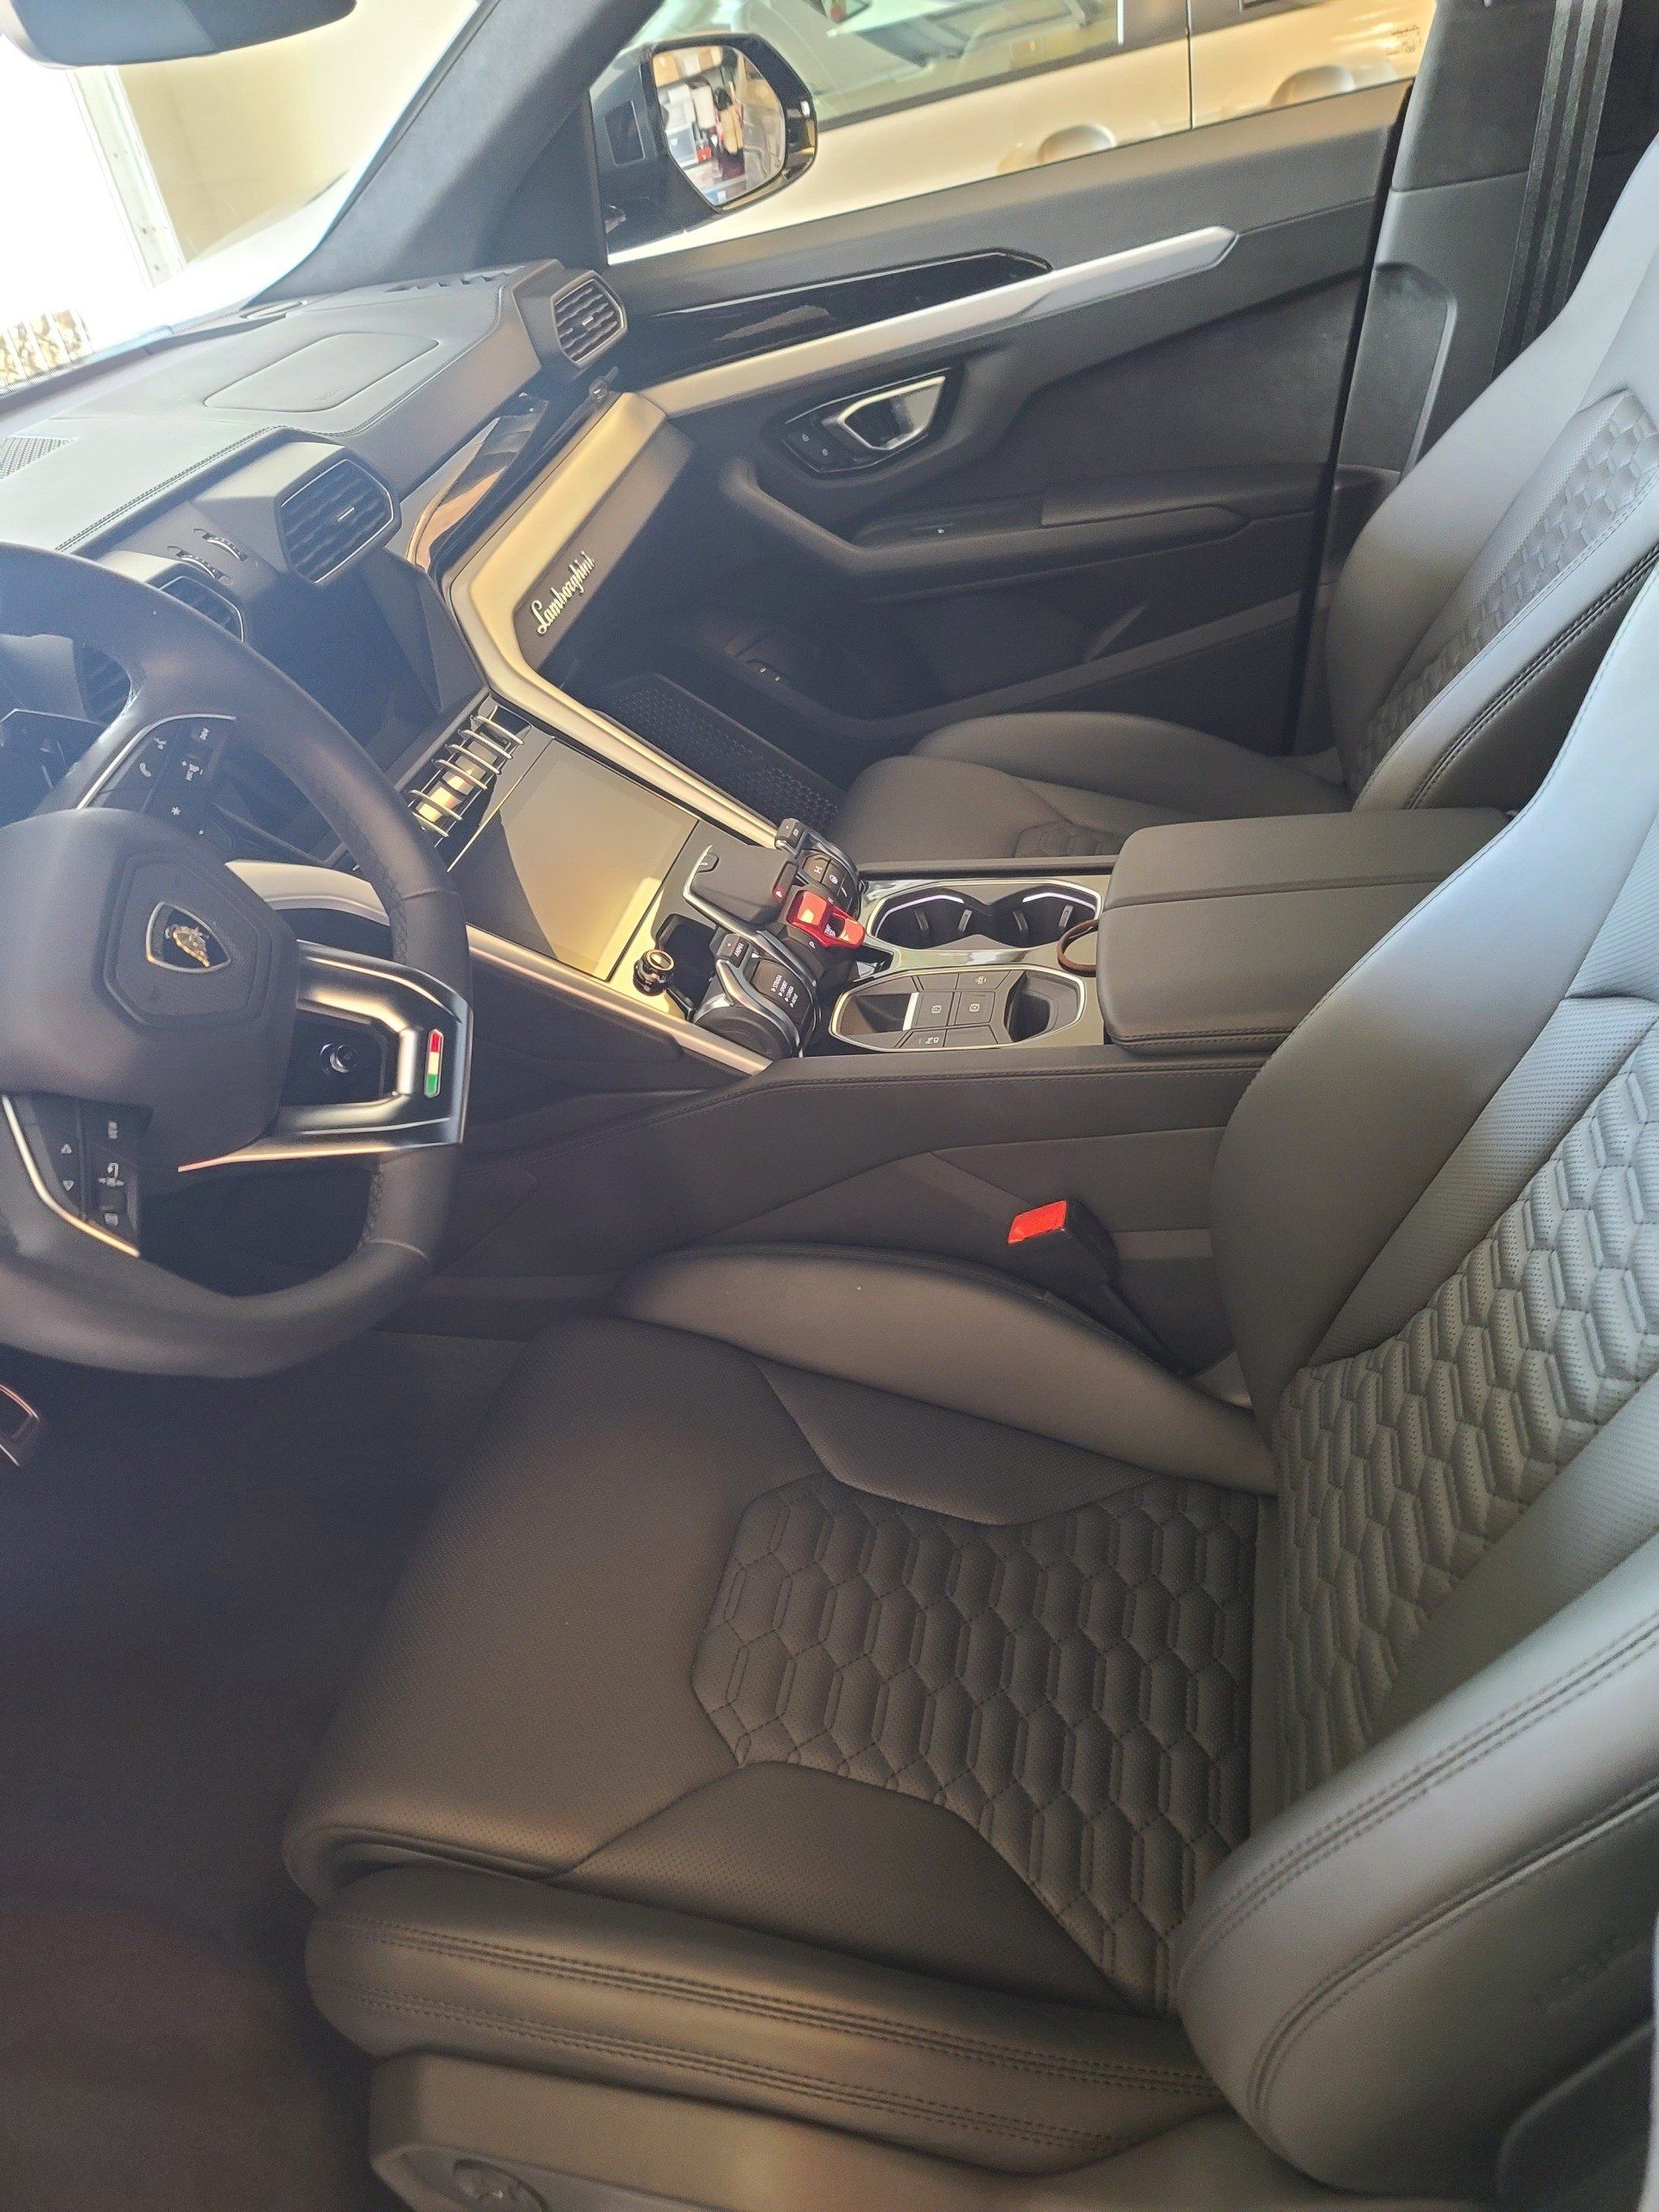 Clean Car interior